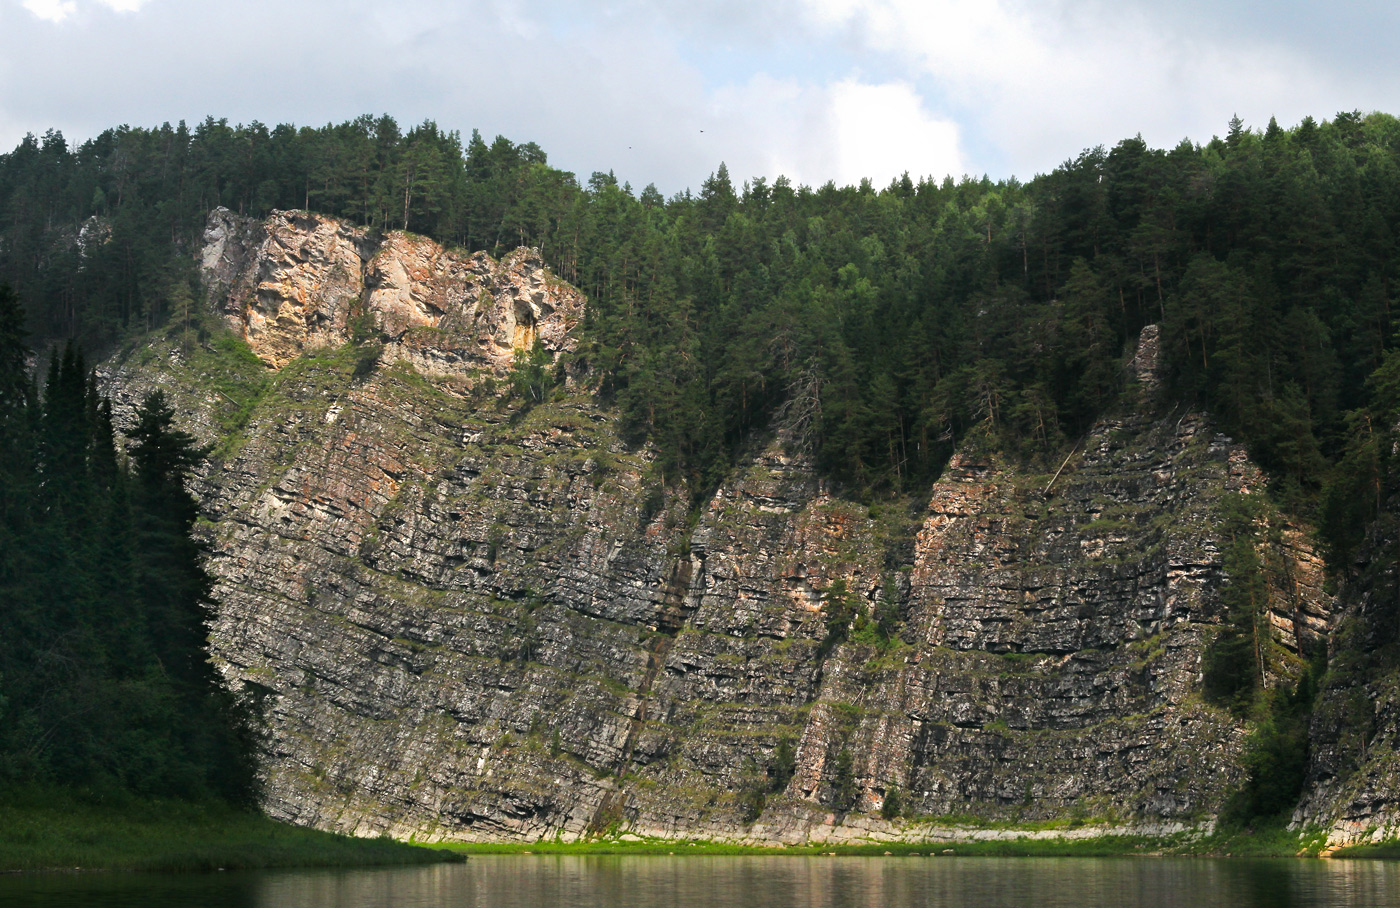 Камень Великан и его окрестности, изображение ландшафта.